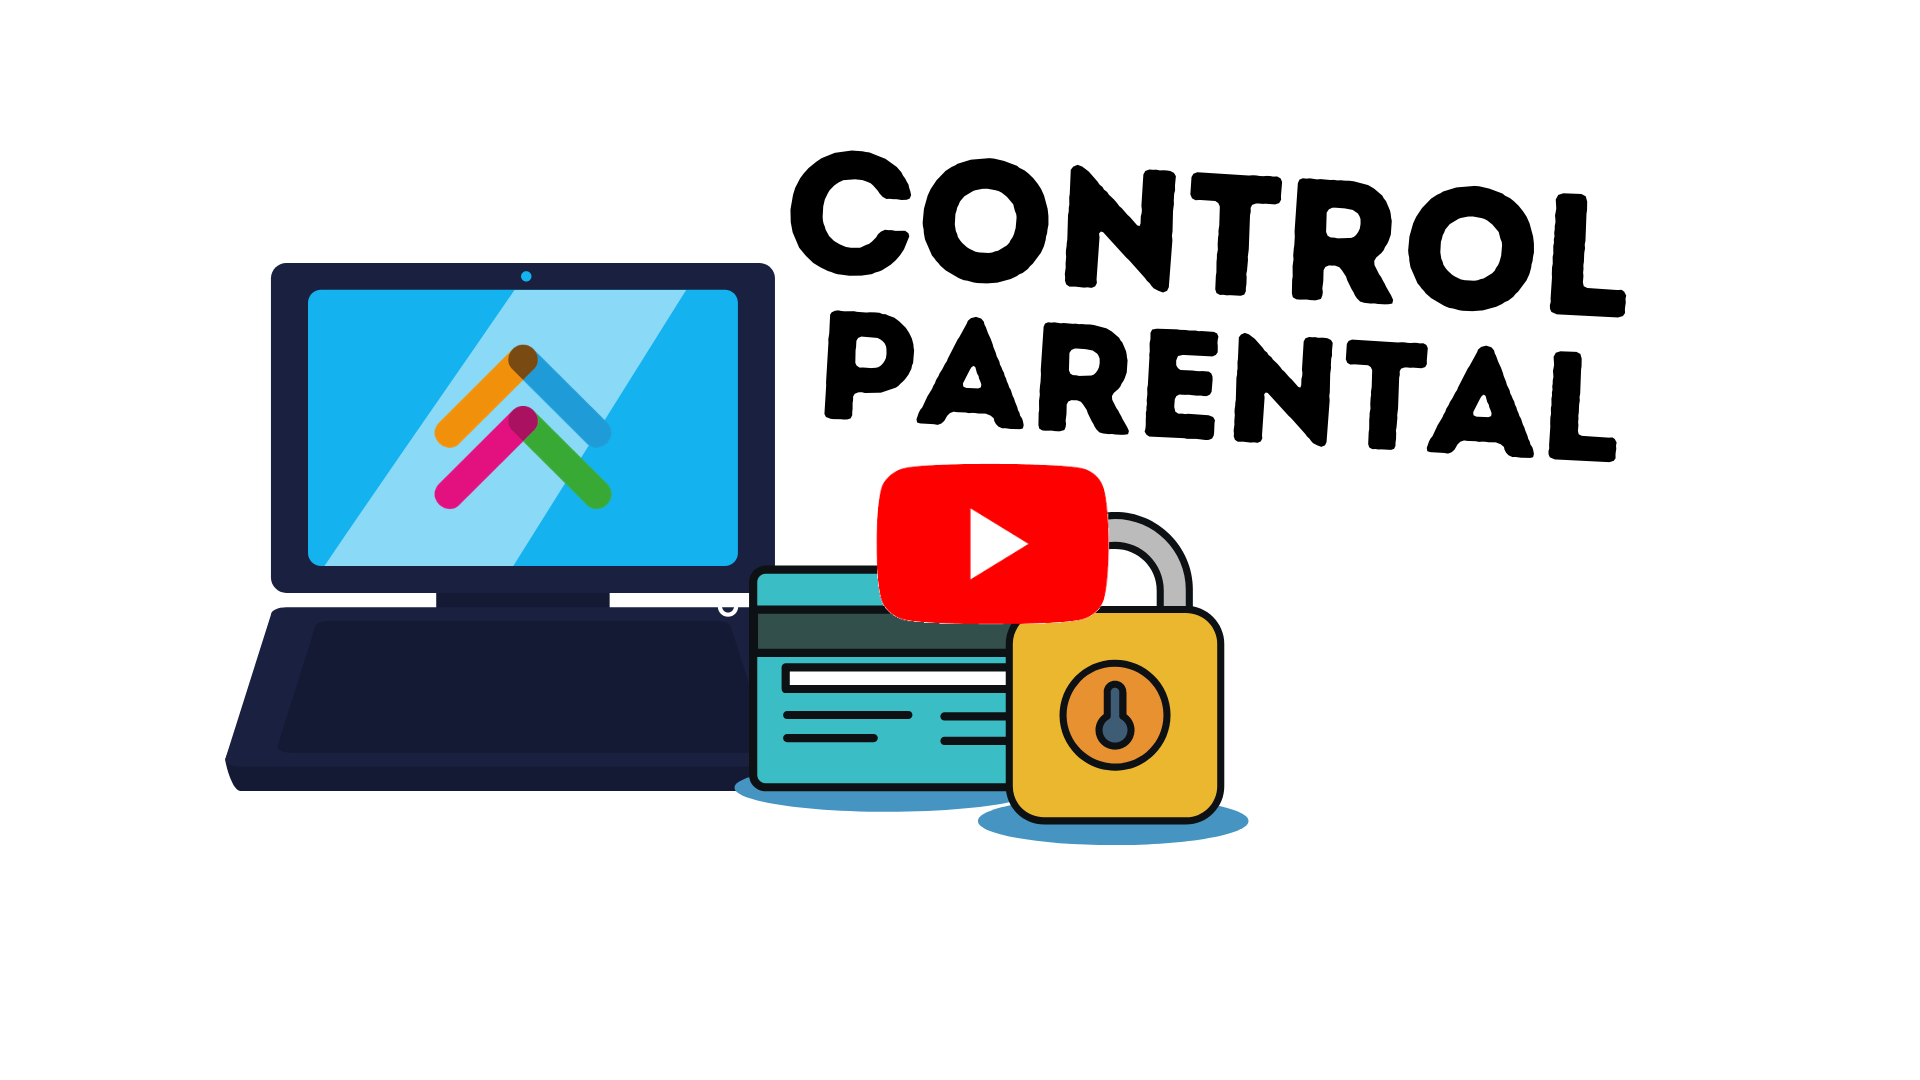 Родительский контроль в интернете. Родительский контроль картинки. Родительский контроль иллюстрация. Родительский контроль в интернете картинки.